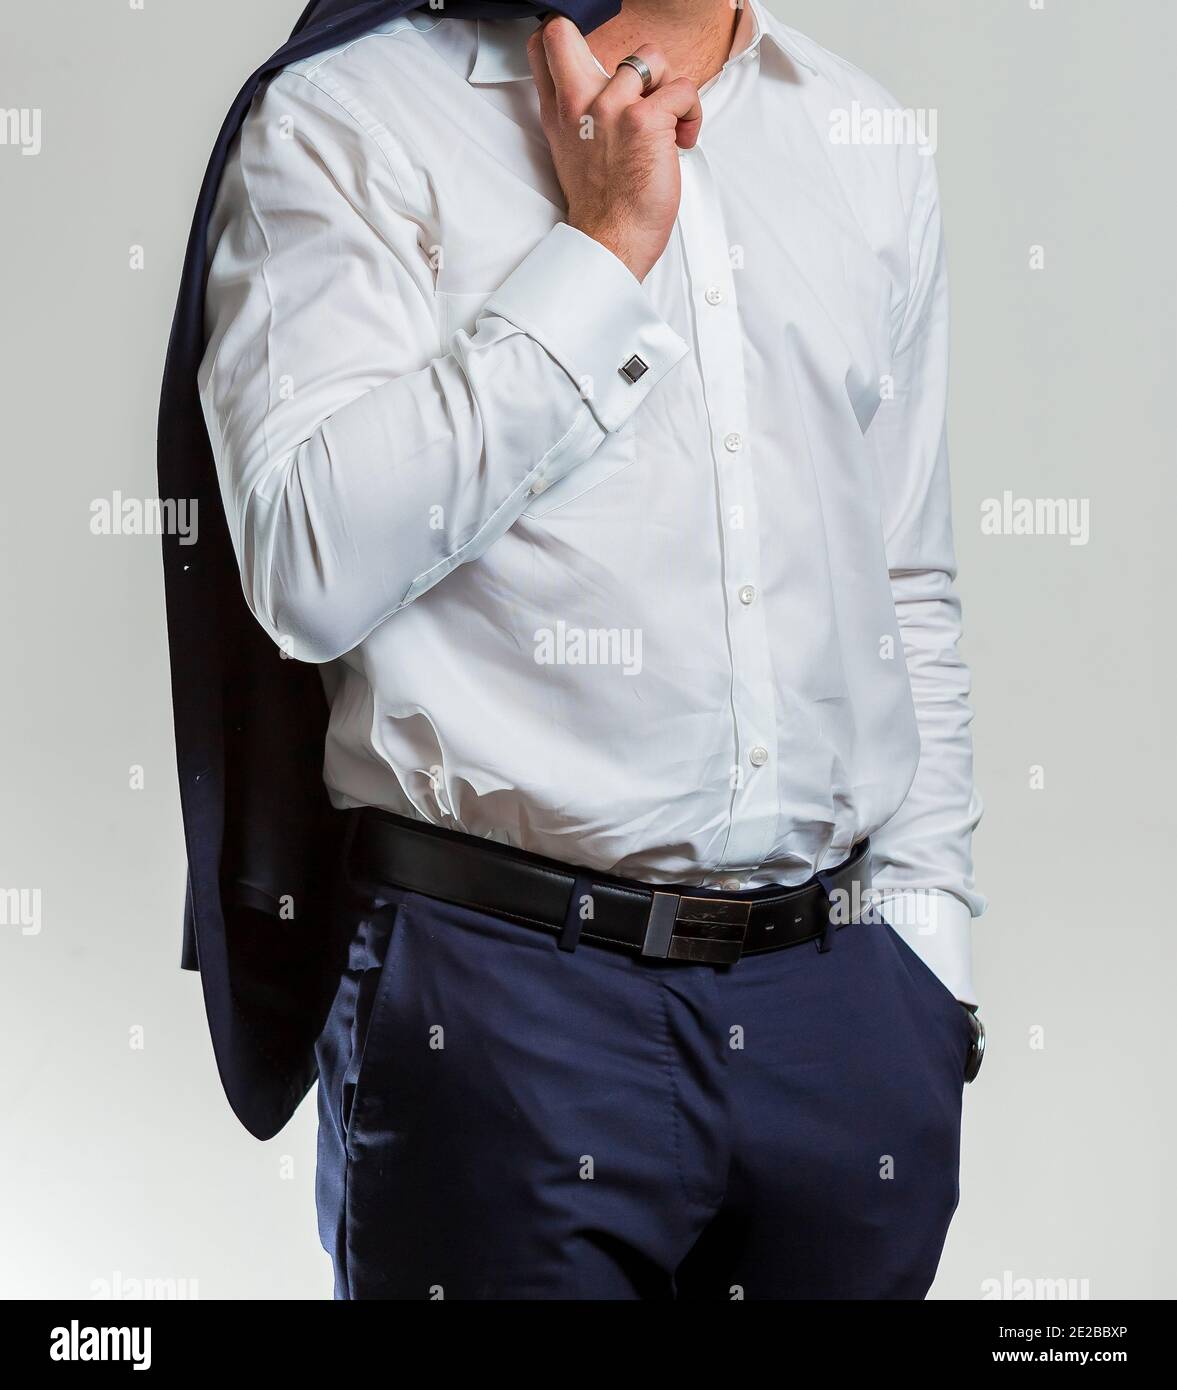 Disparo vertical de un hombre vestido con una camisa blanca con pantalón azul oscuro, sosteniendo un traje Fotografía de -